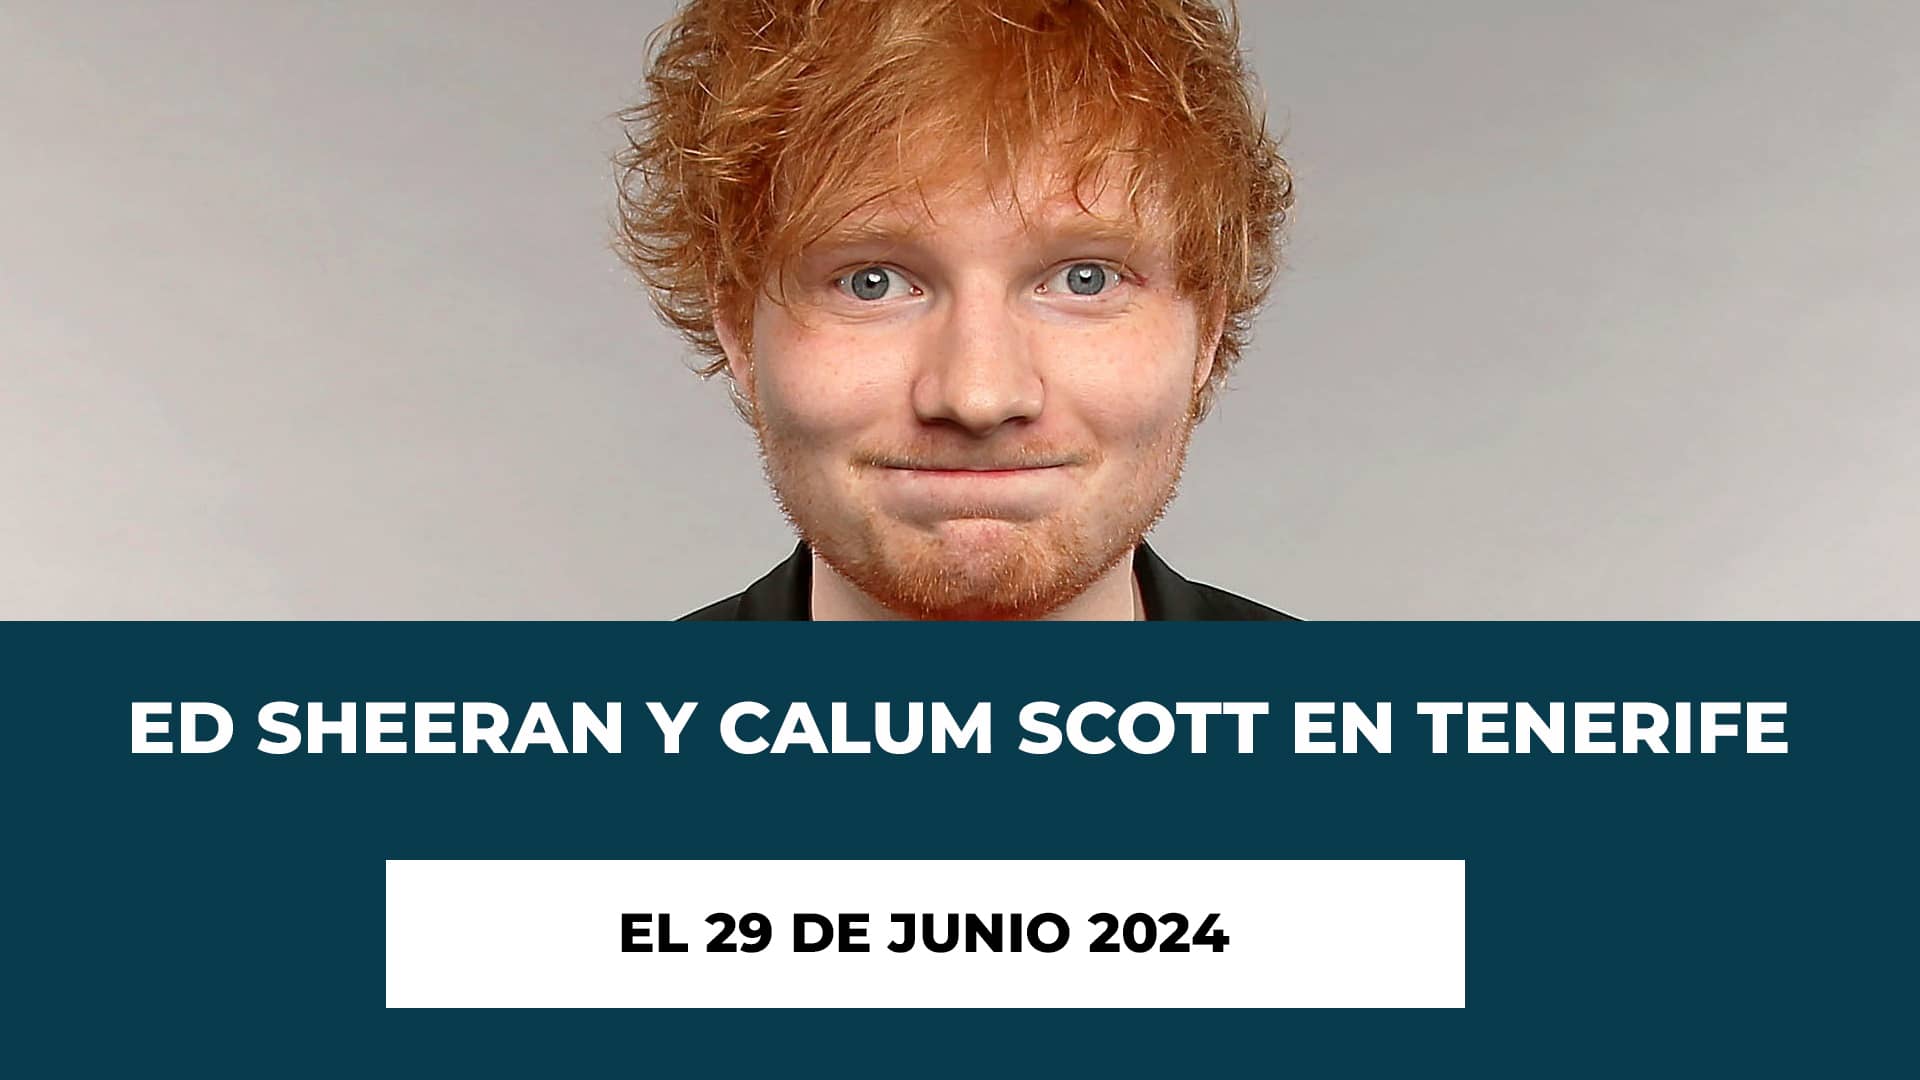 Ed Sheeran y Calum Scott en Tenerife el 29 de Junio 2024 - Un invitado especial - Recinto del concierto - Entradas - Horario